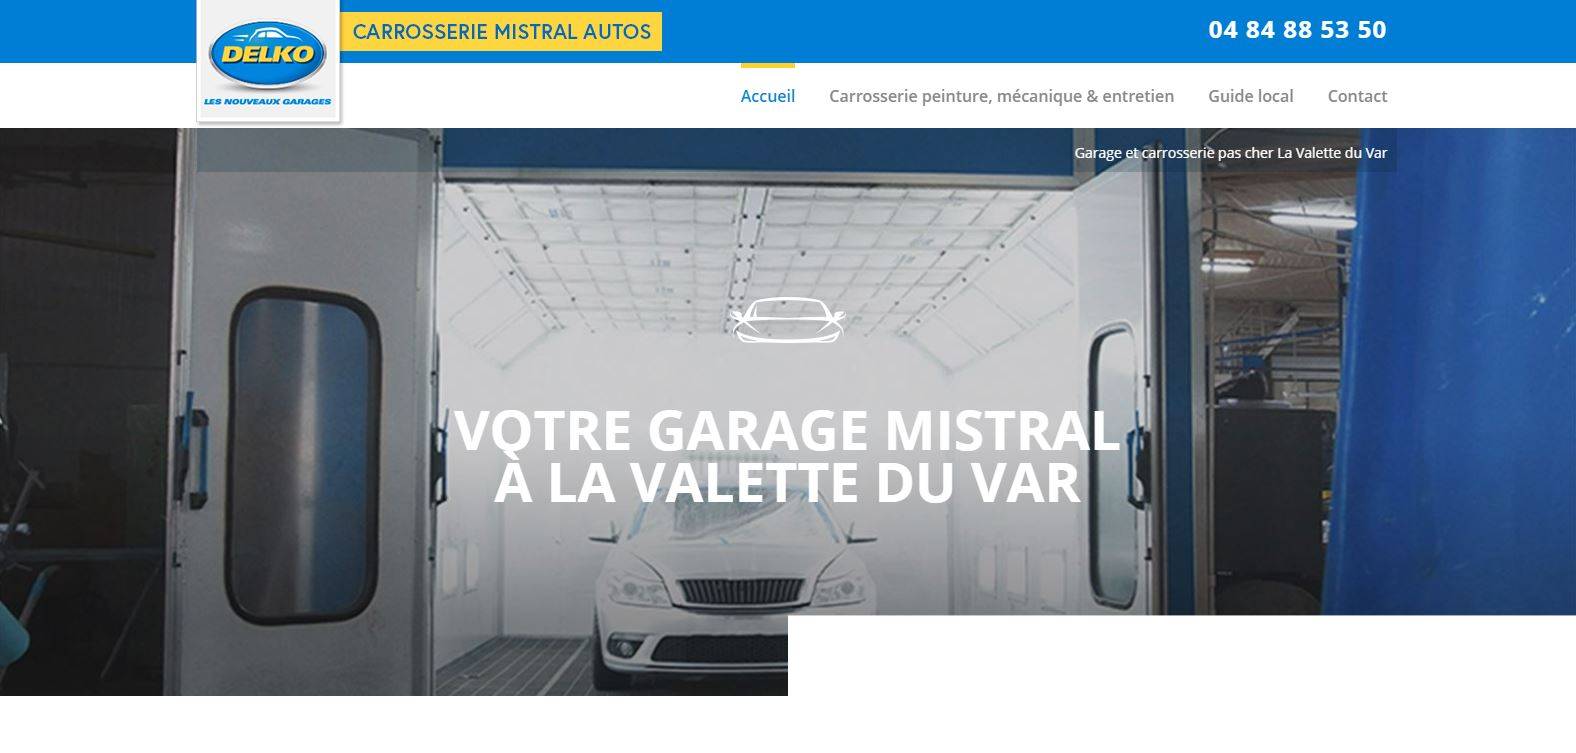 Quel garage pour le montage de mes pneus auto à La Valette du Var ? - Mistral Autos Delko